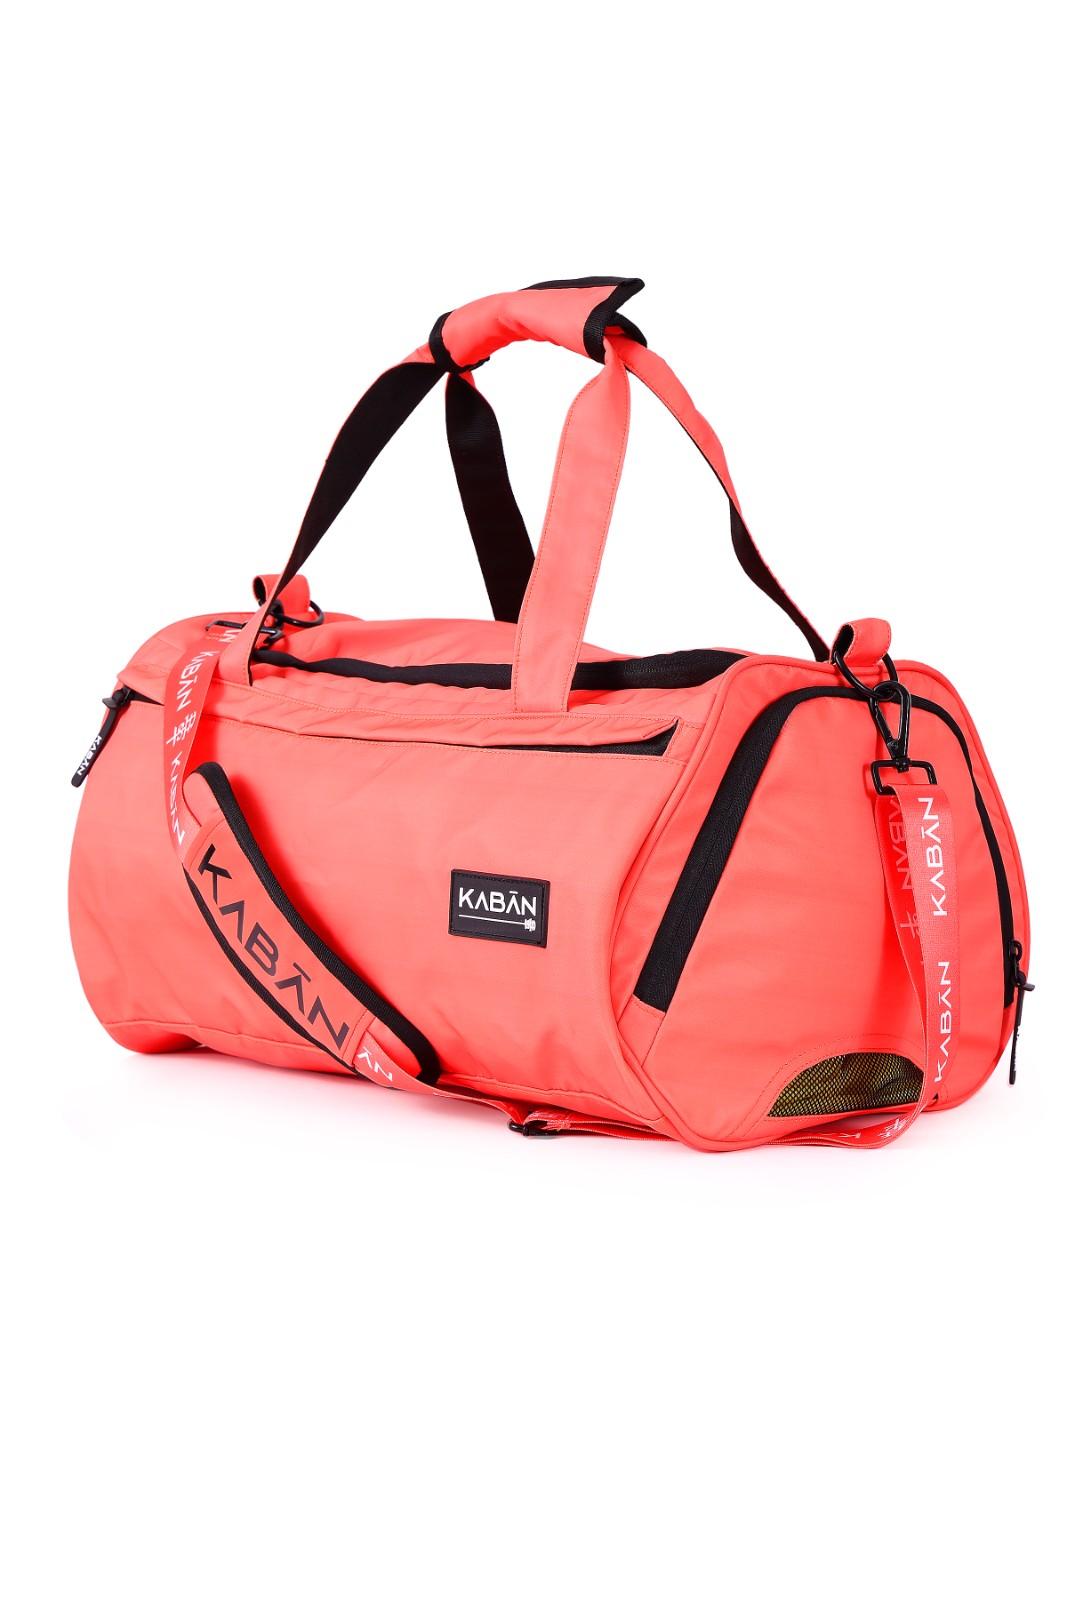    	 Coral Crush Orange Water-Resistant Duffle bag Gym bag